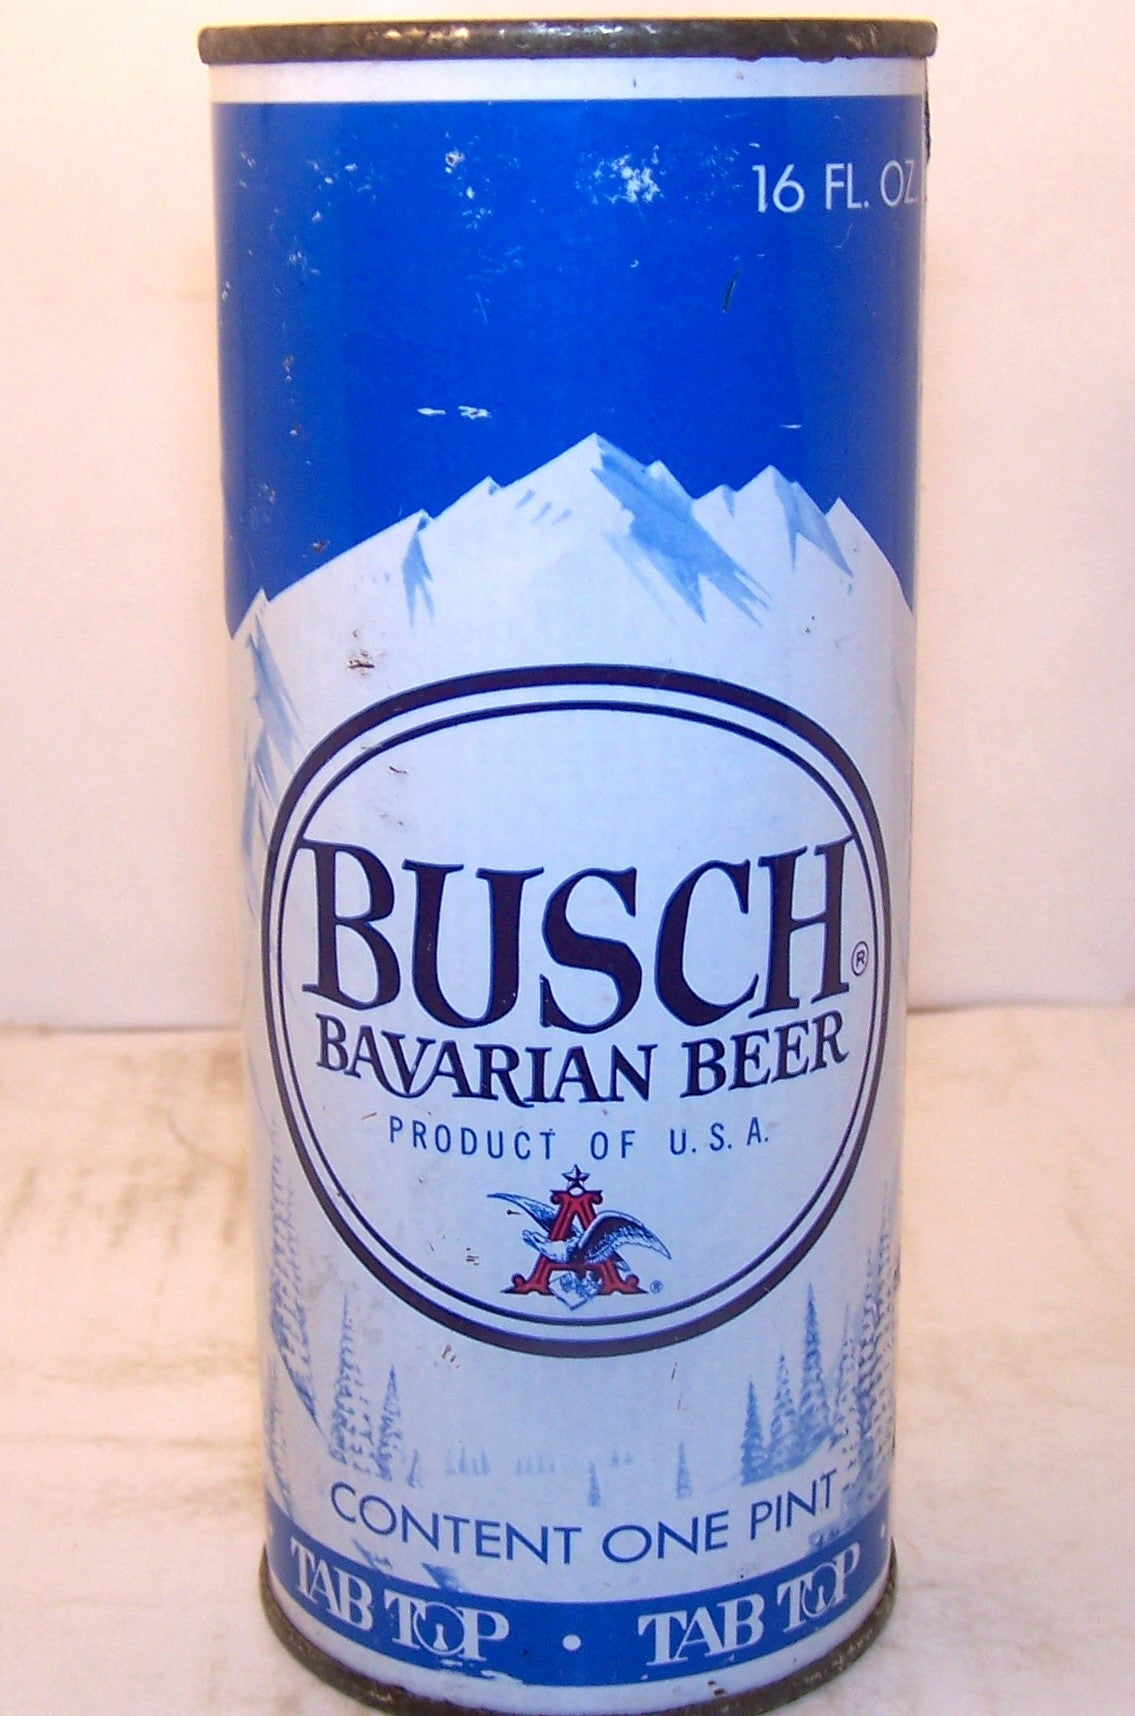 Bucsh Bavarian Beer juice top, USBC II 146-1 Grade 1-